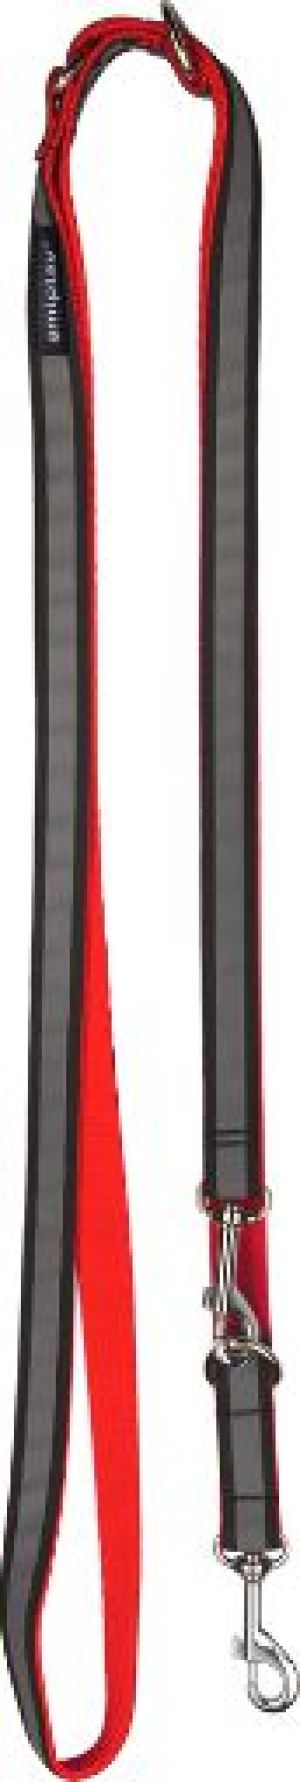 Ami Play Smycz regulowana 6 in 1 Shine M 100-200 x 1,5cm czerwony 1